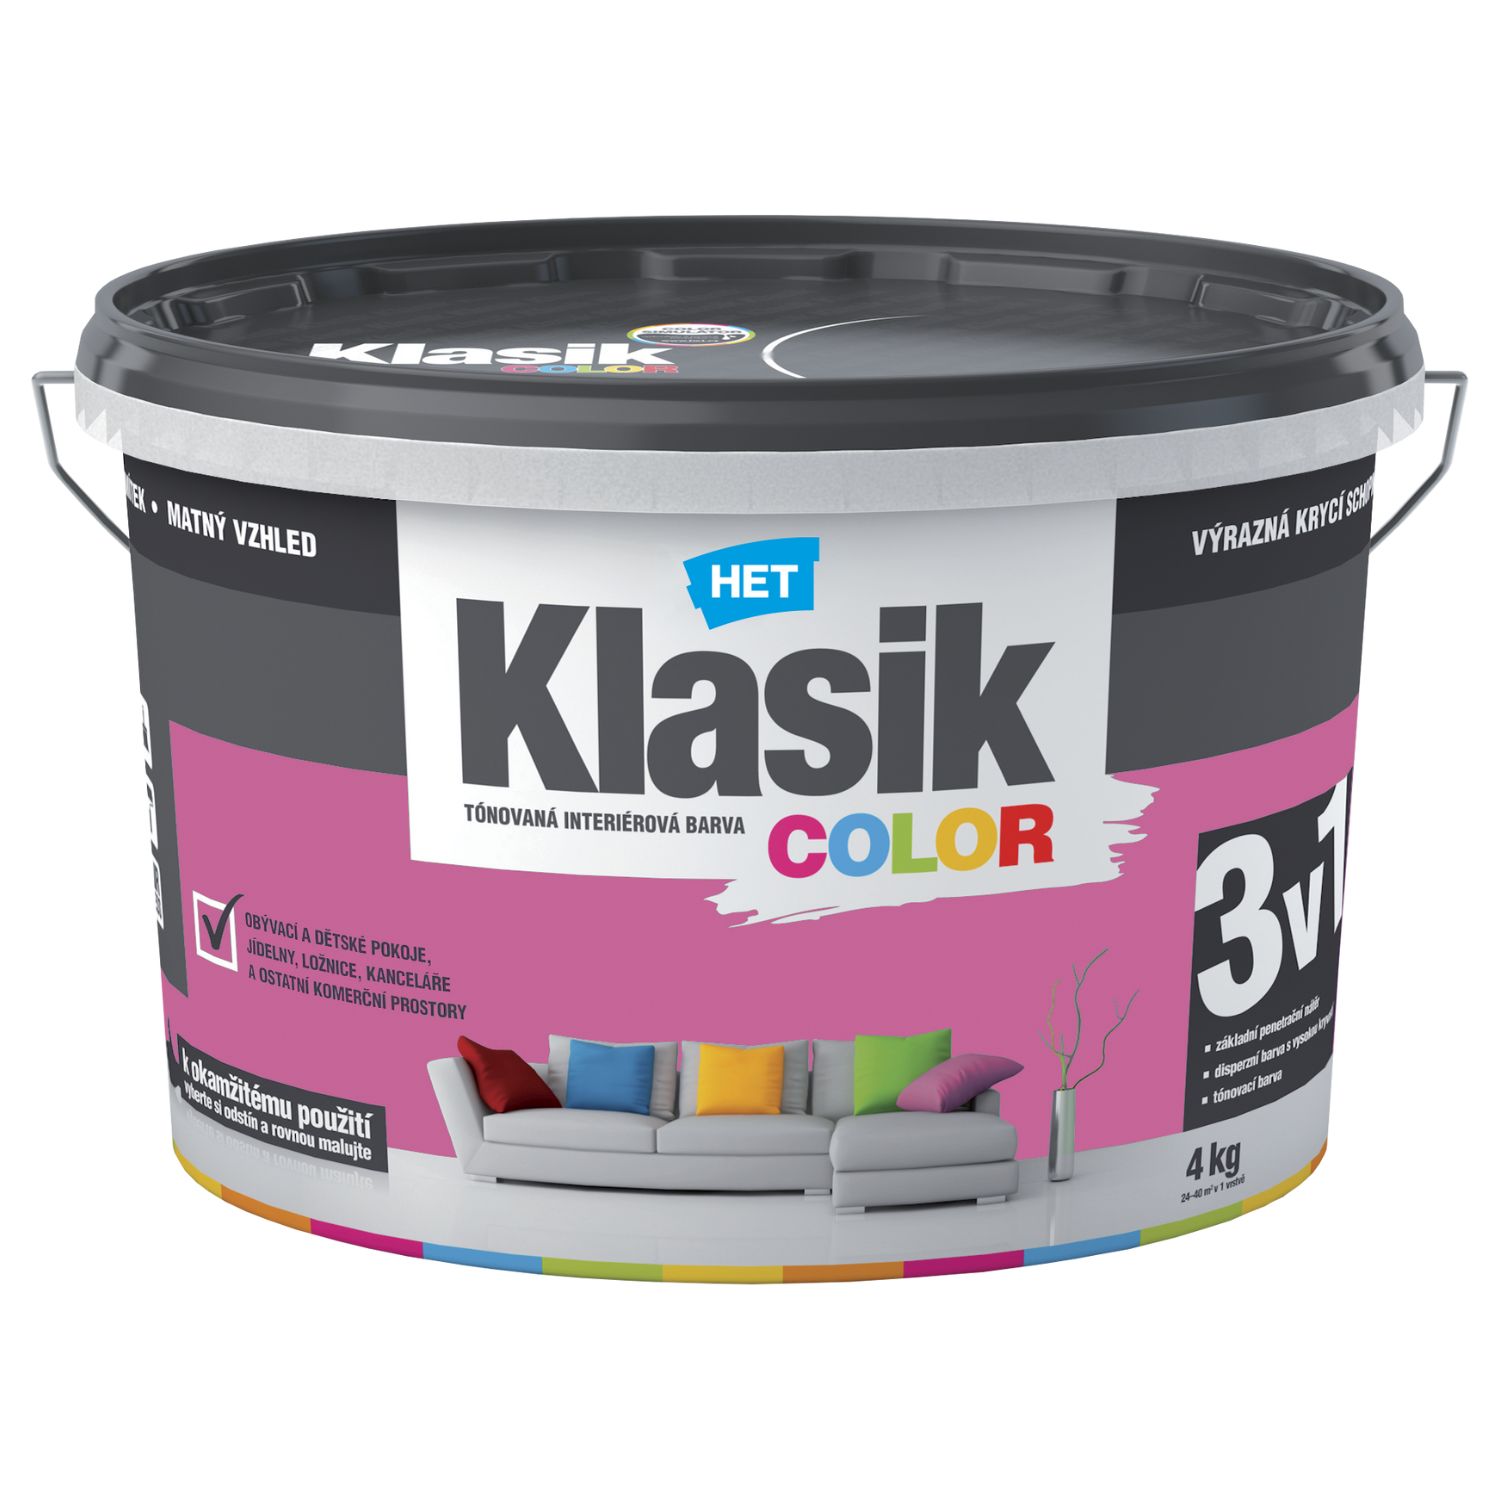 HET Klasik COLOR tónovaná interiérová akrylátová disperzná oteruvzdorná farba 4 kg, KC0317 - purpurový